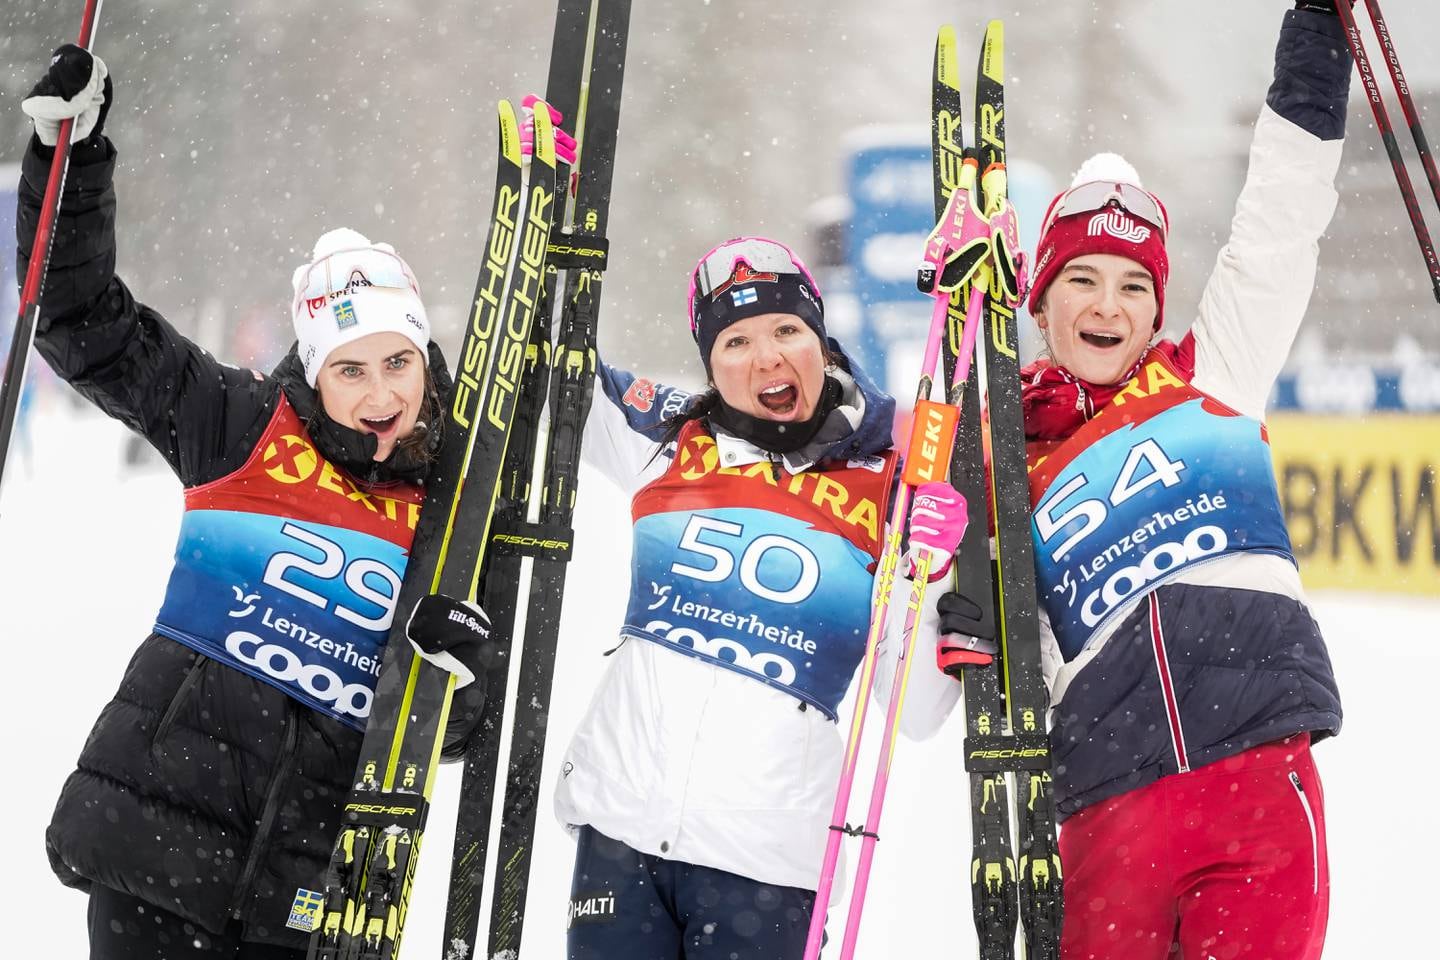 Finske Kerttu Niskanen jubler etter seier på 10 km klassisk for kvinner  under Tour de Ski i Lenzerheide. Ebba Andersson (t.v.) kom på 2. plass og russiske Natalia Neprjajeva kom på 3. plass.